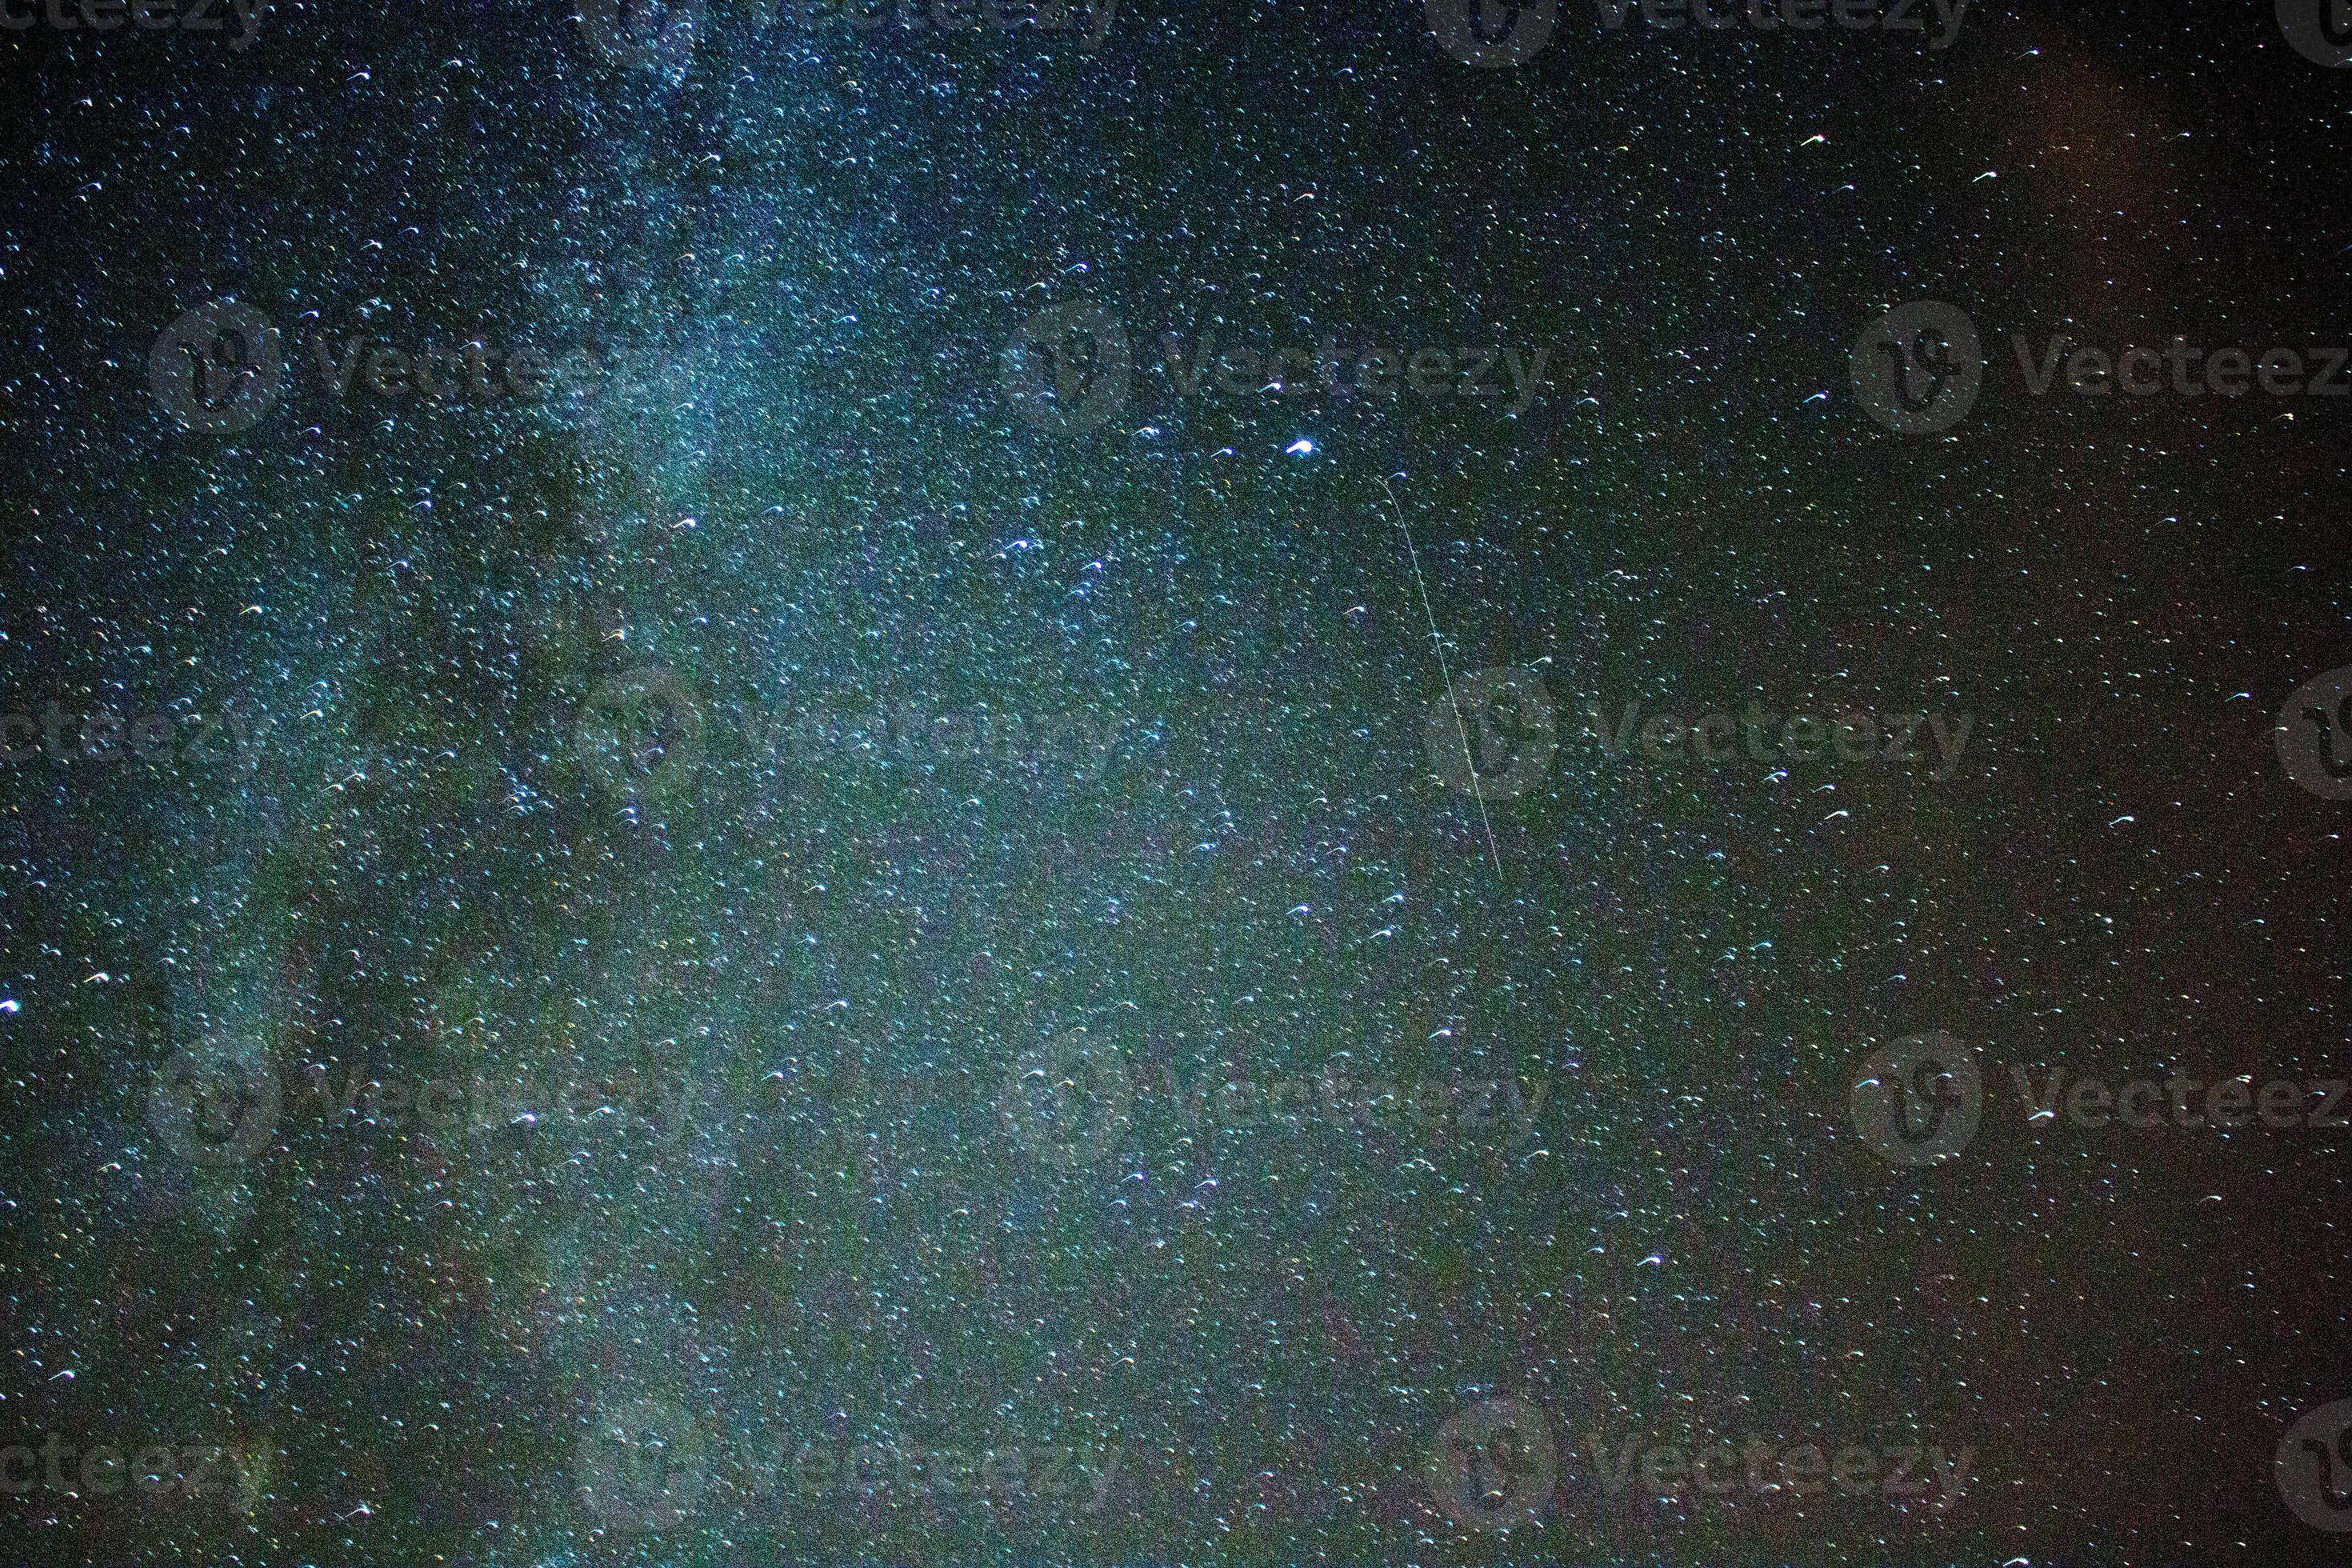 perseid meteorenregen sterren - melkweg foto